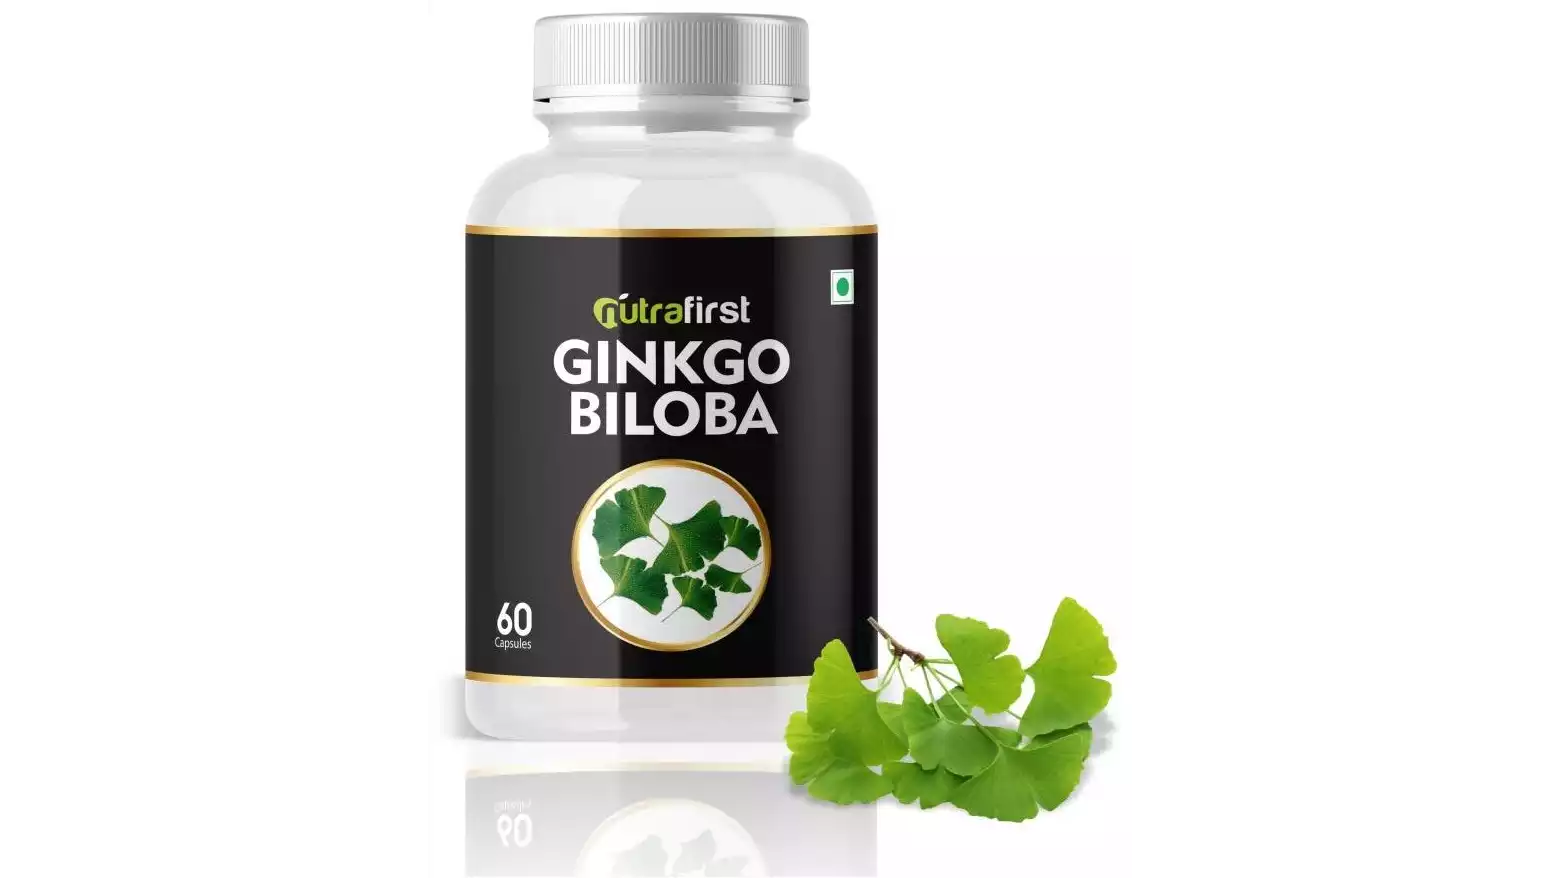 Nutra First Ginkgo Biloba Capsules (60caps)